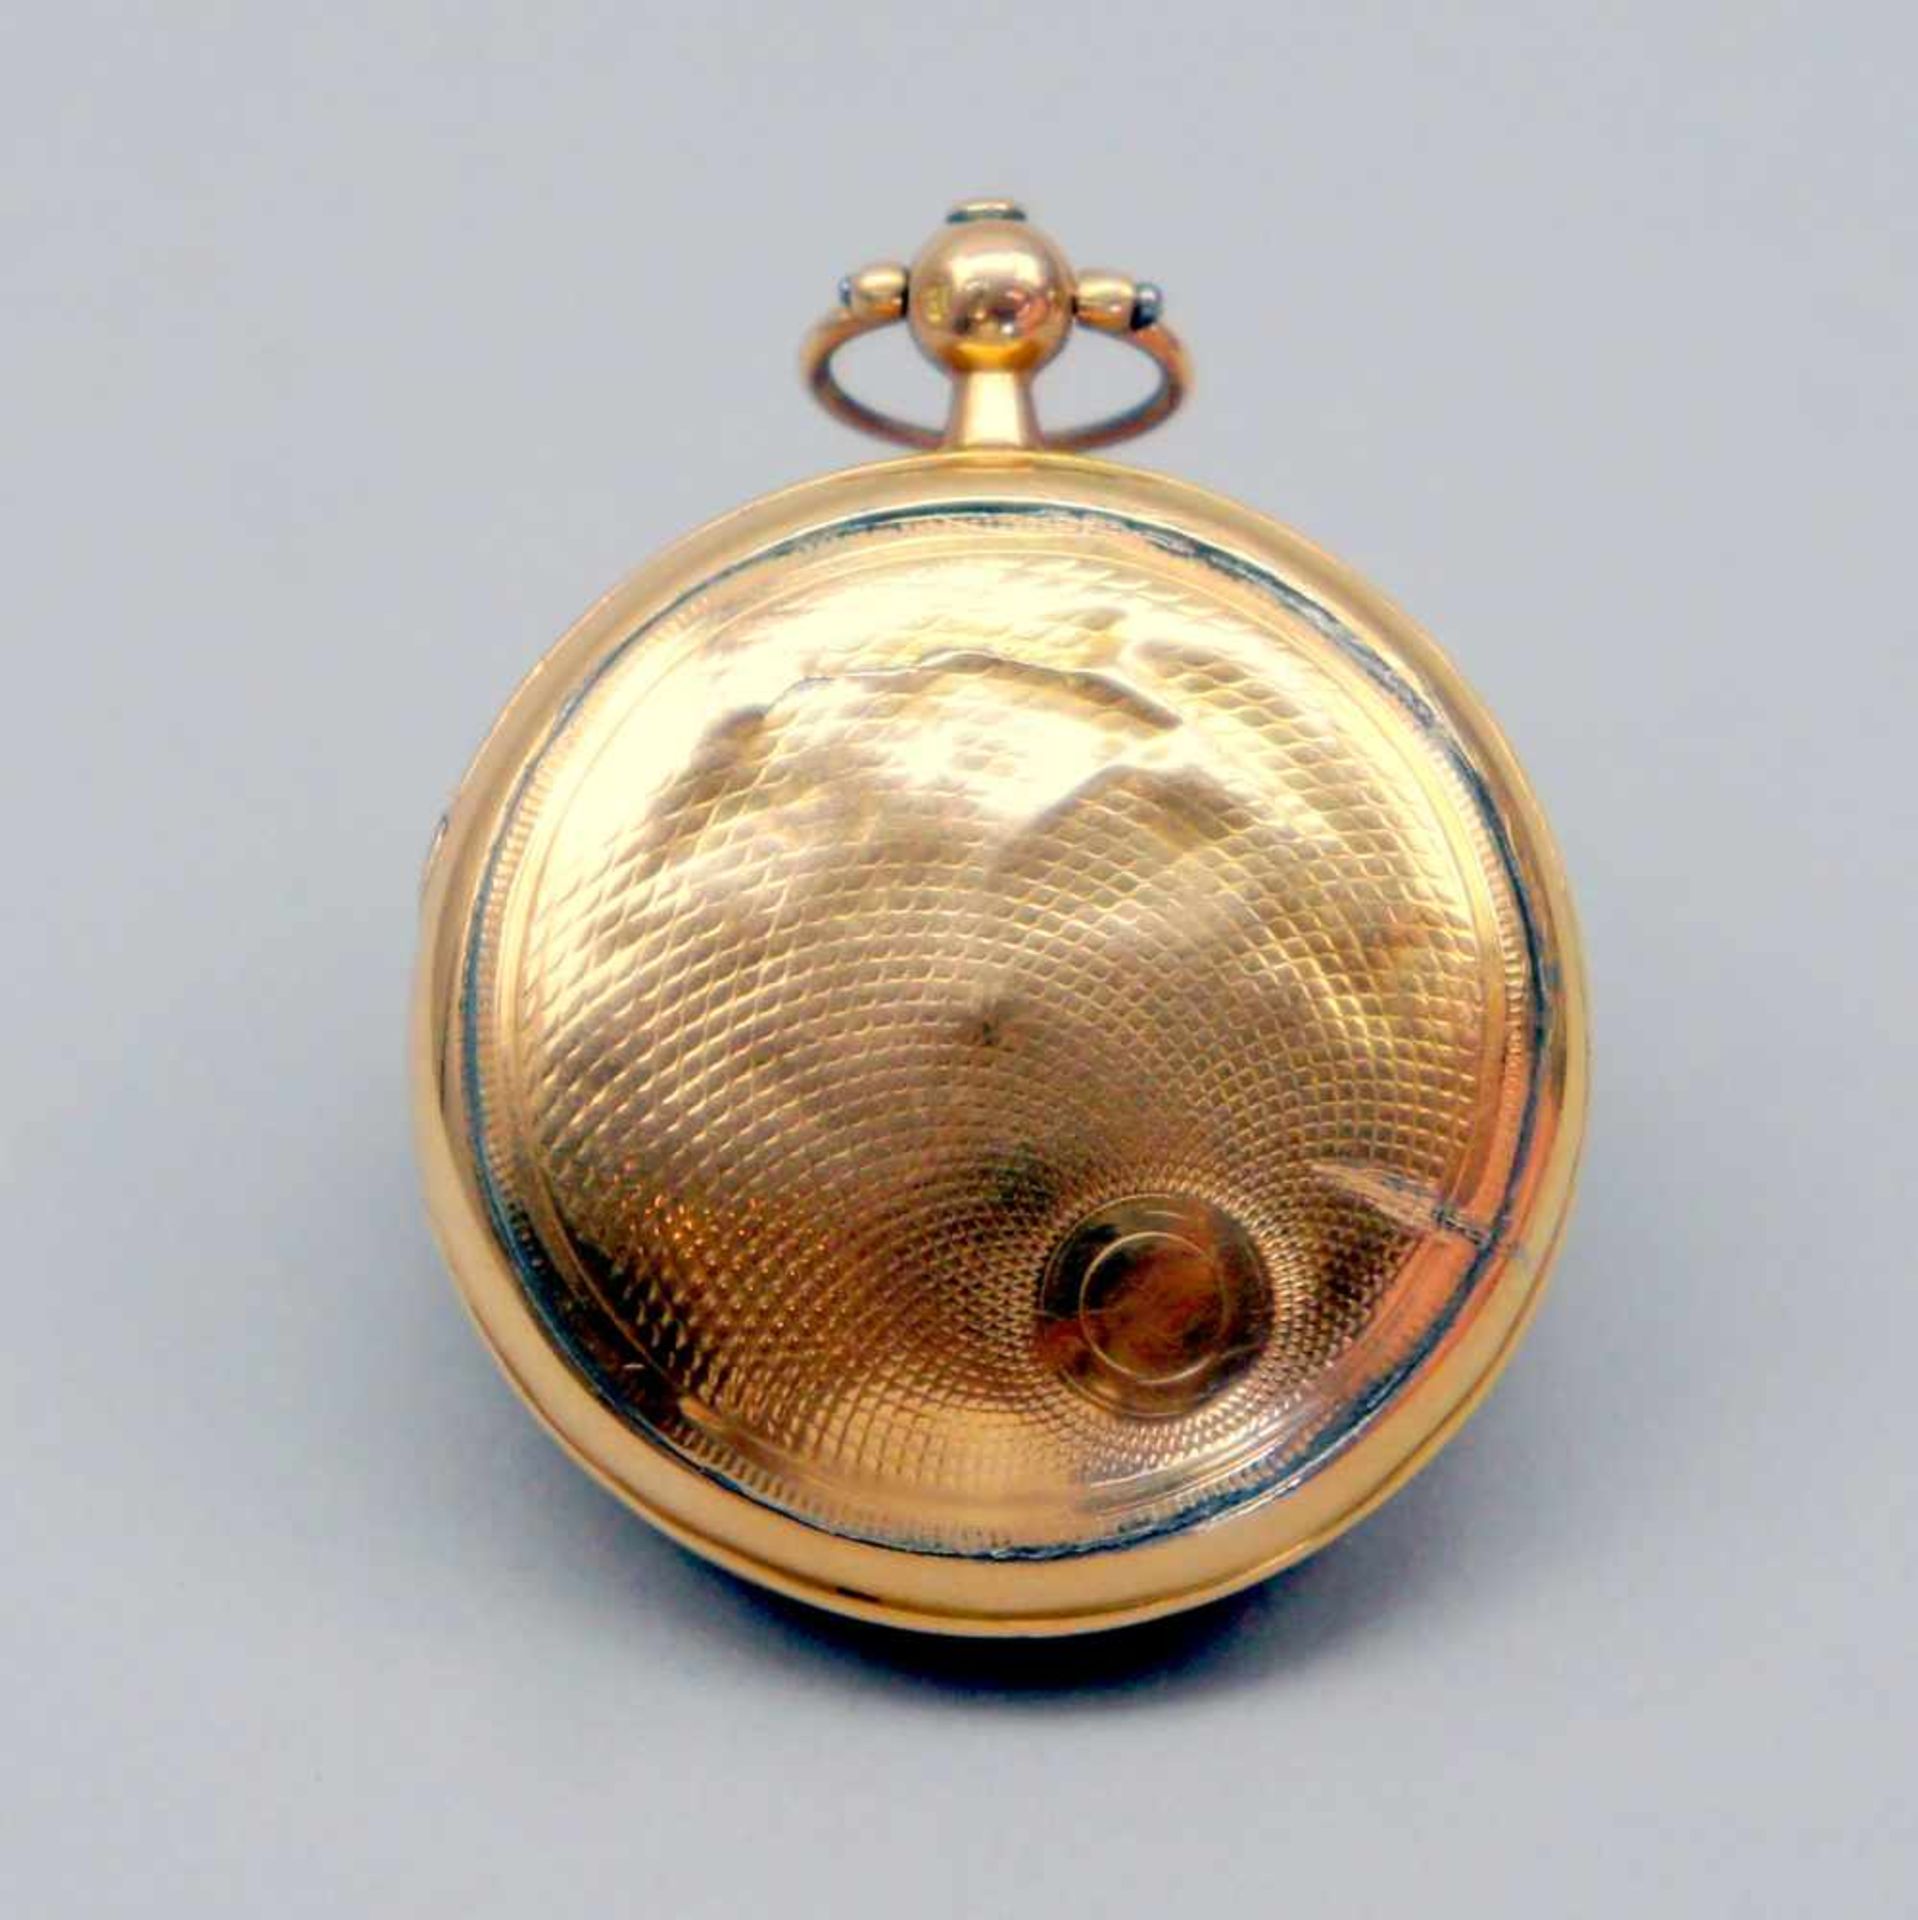 Breguet & Fils, Kleine Gold-Taschenuhr18 K. Gelbgold. Spindel-Taschenuhr. Gangbar, Glasring nicht - Bild 3 aus 4